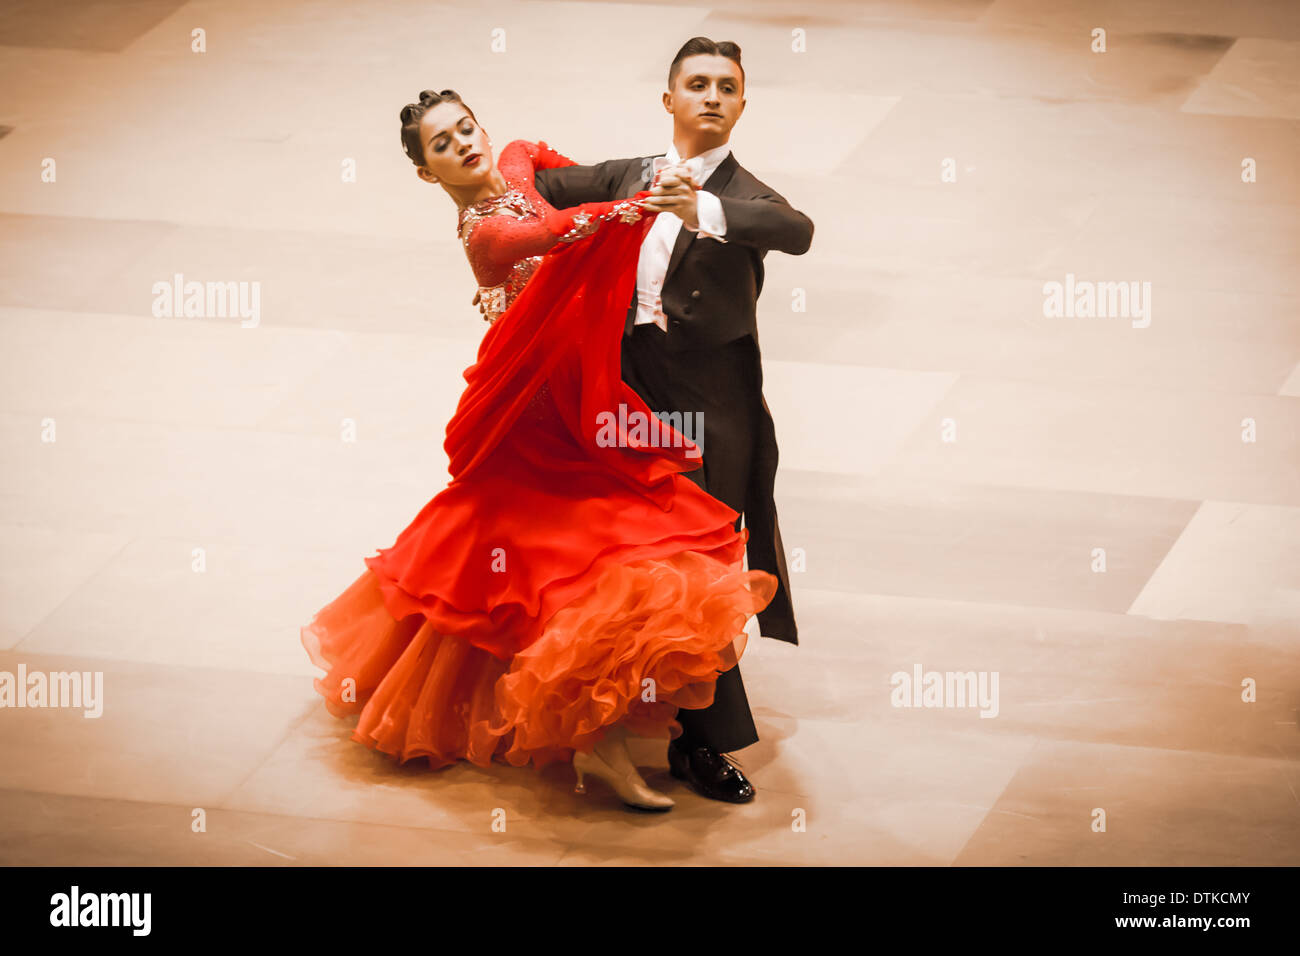 Waltz dance immagini e fotografie stock ad alta risoluzione - Alamy